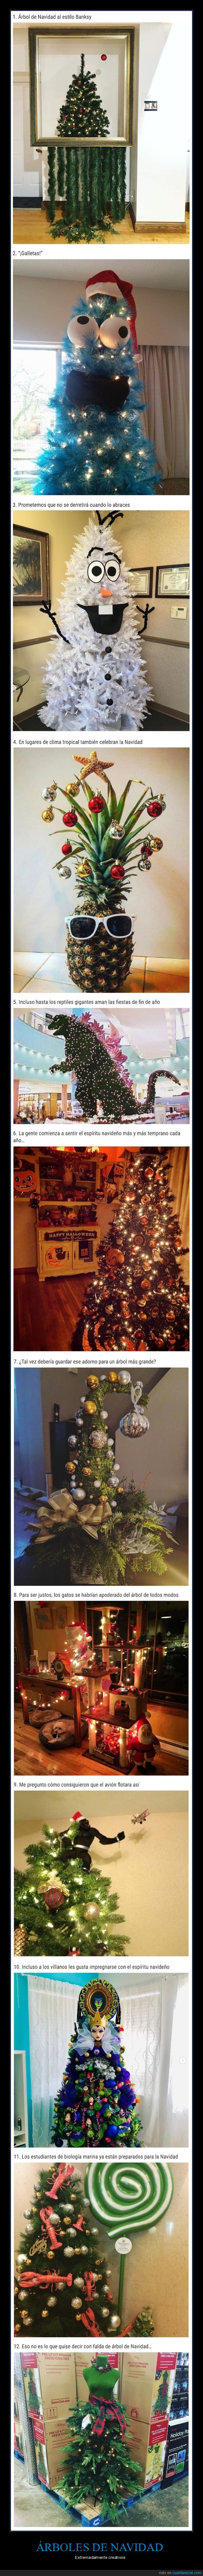 árboles de navidad,creativos,navidad